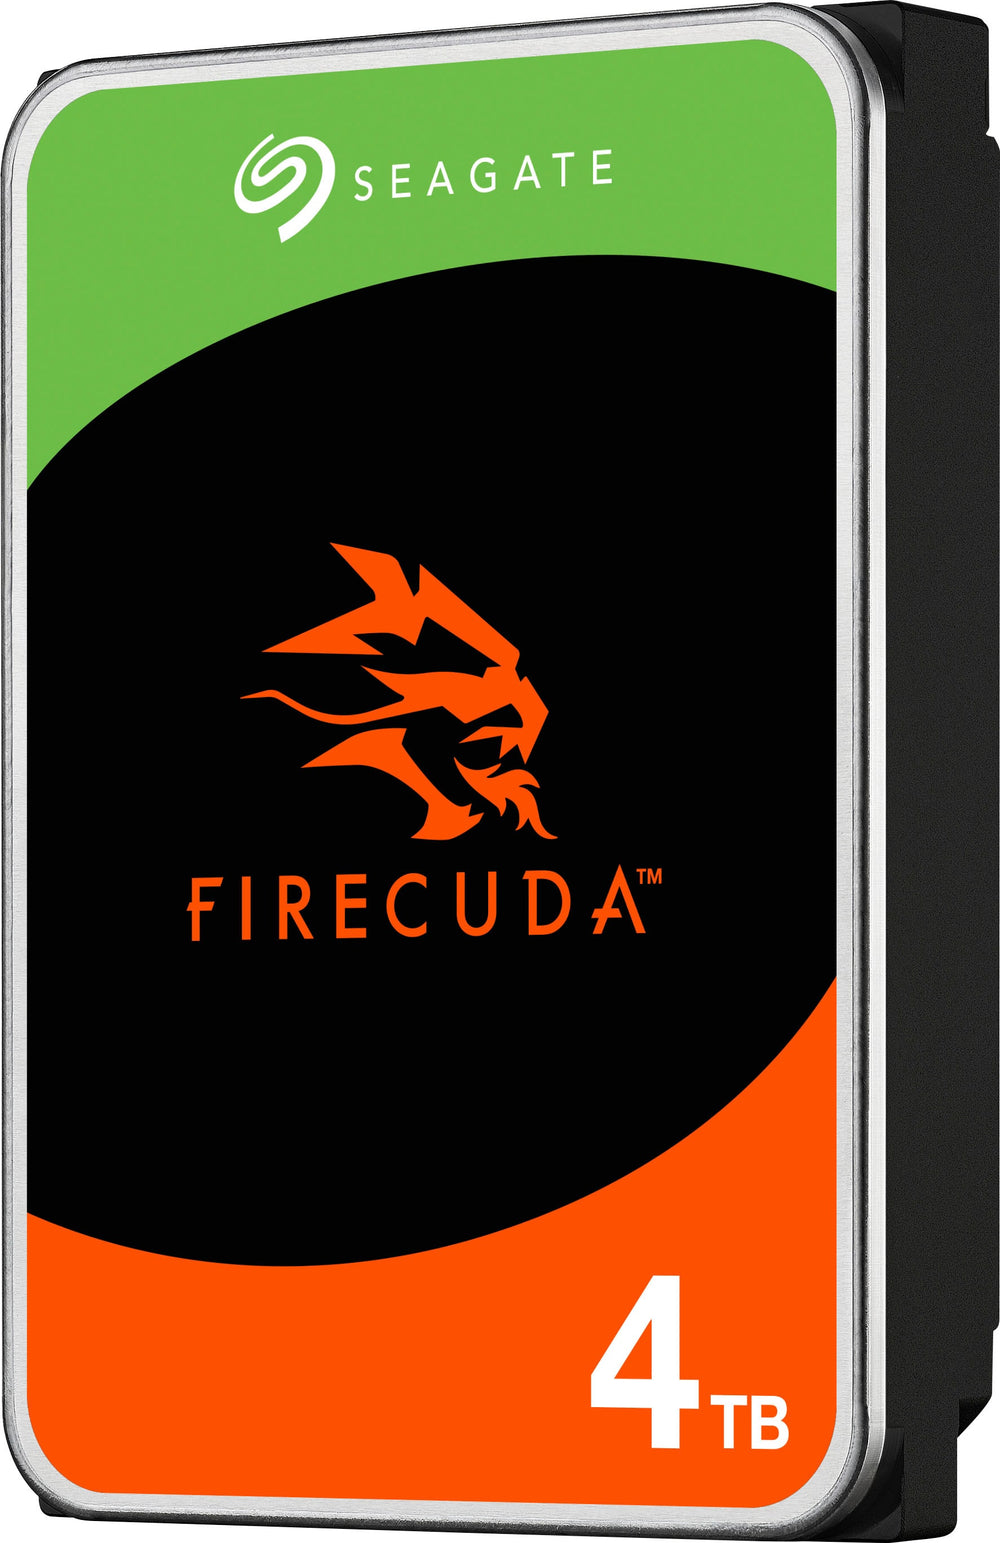 Seagate - FireCuda 4TB Internal SATA Hard Drive for Desktops_1